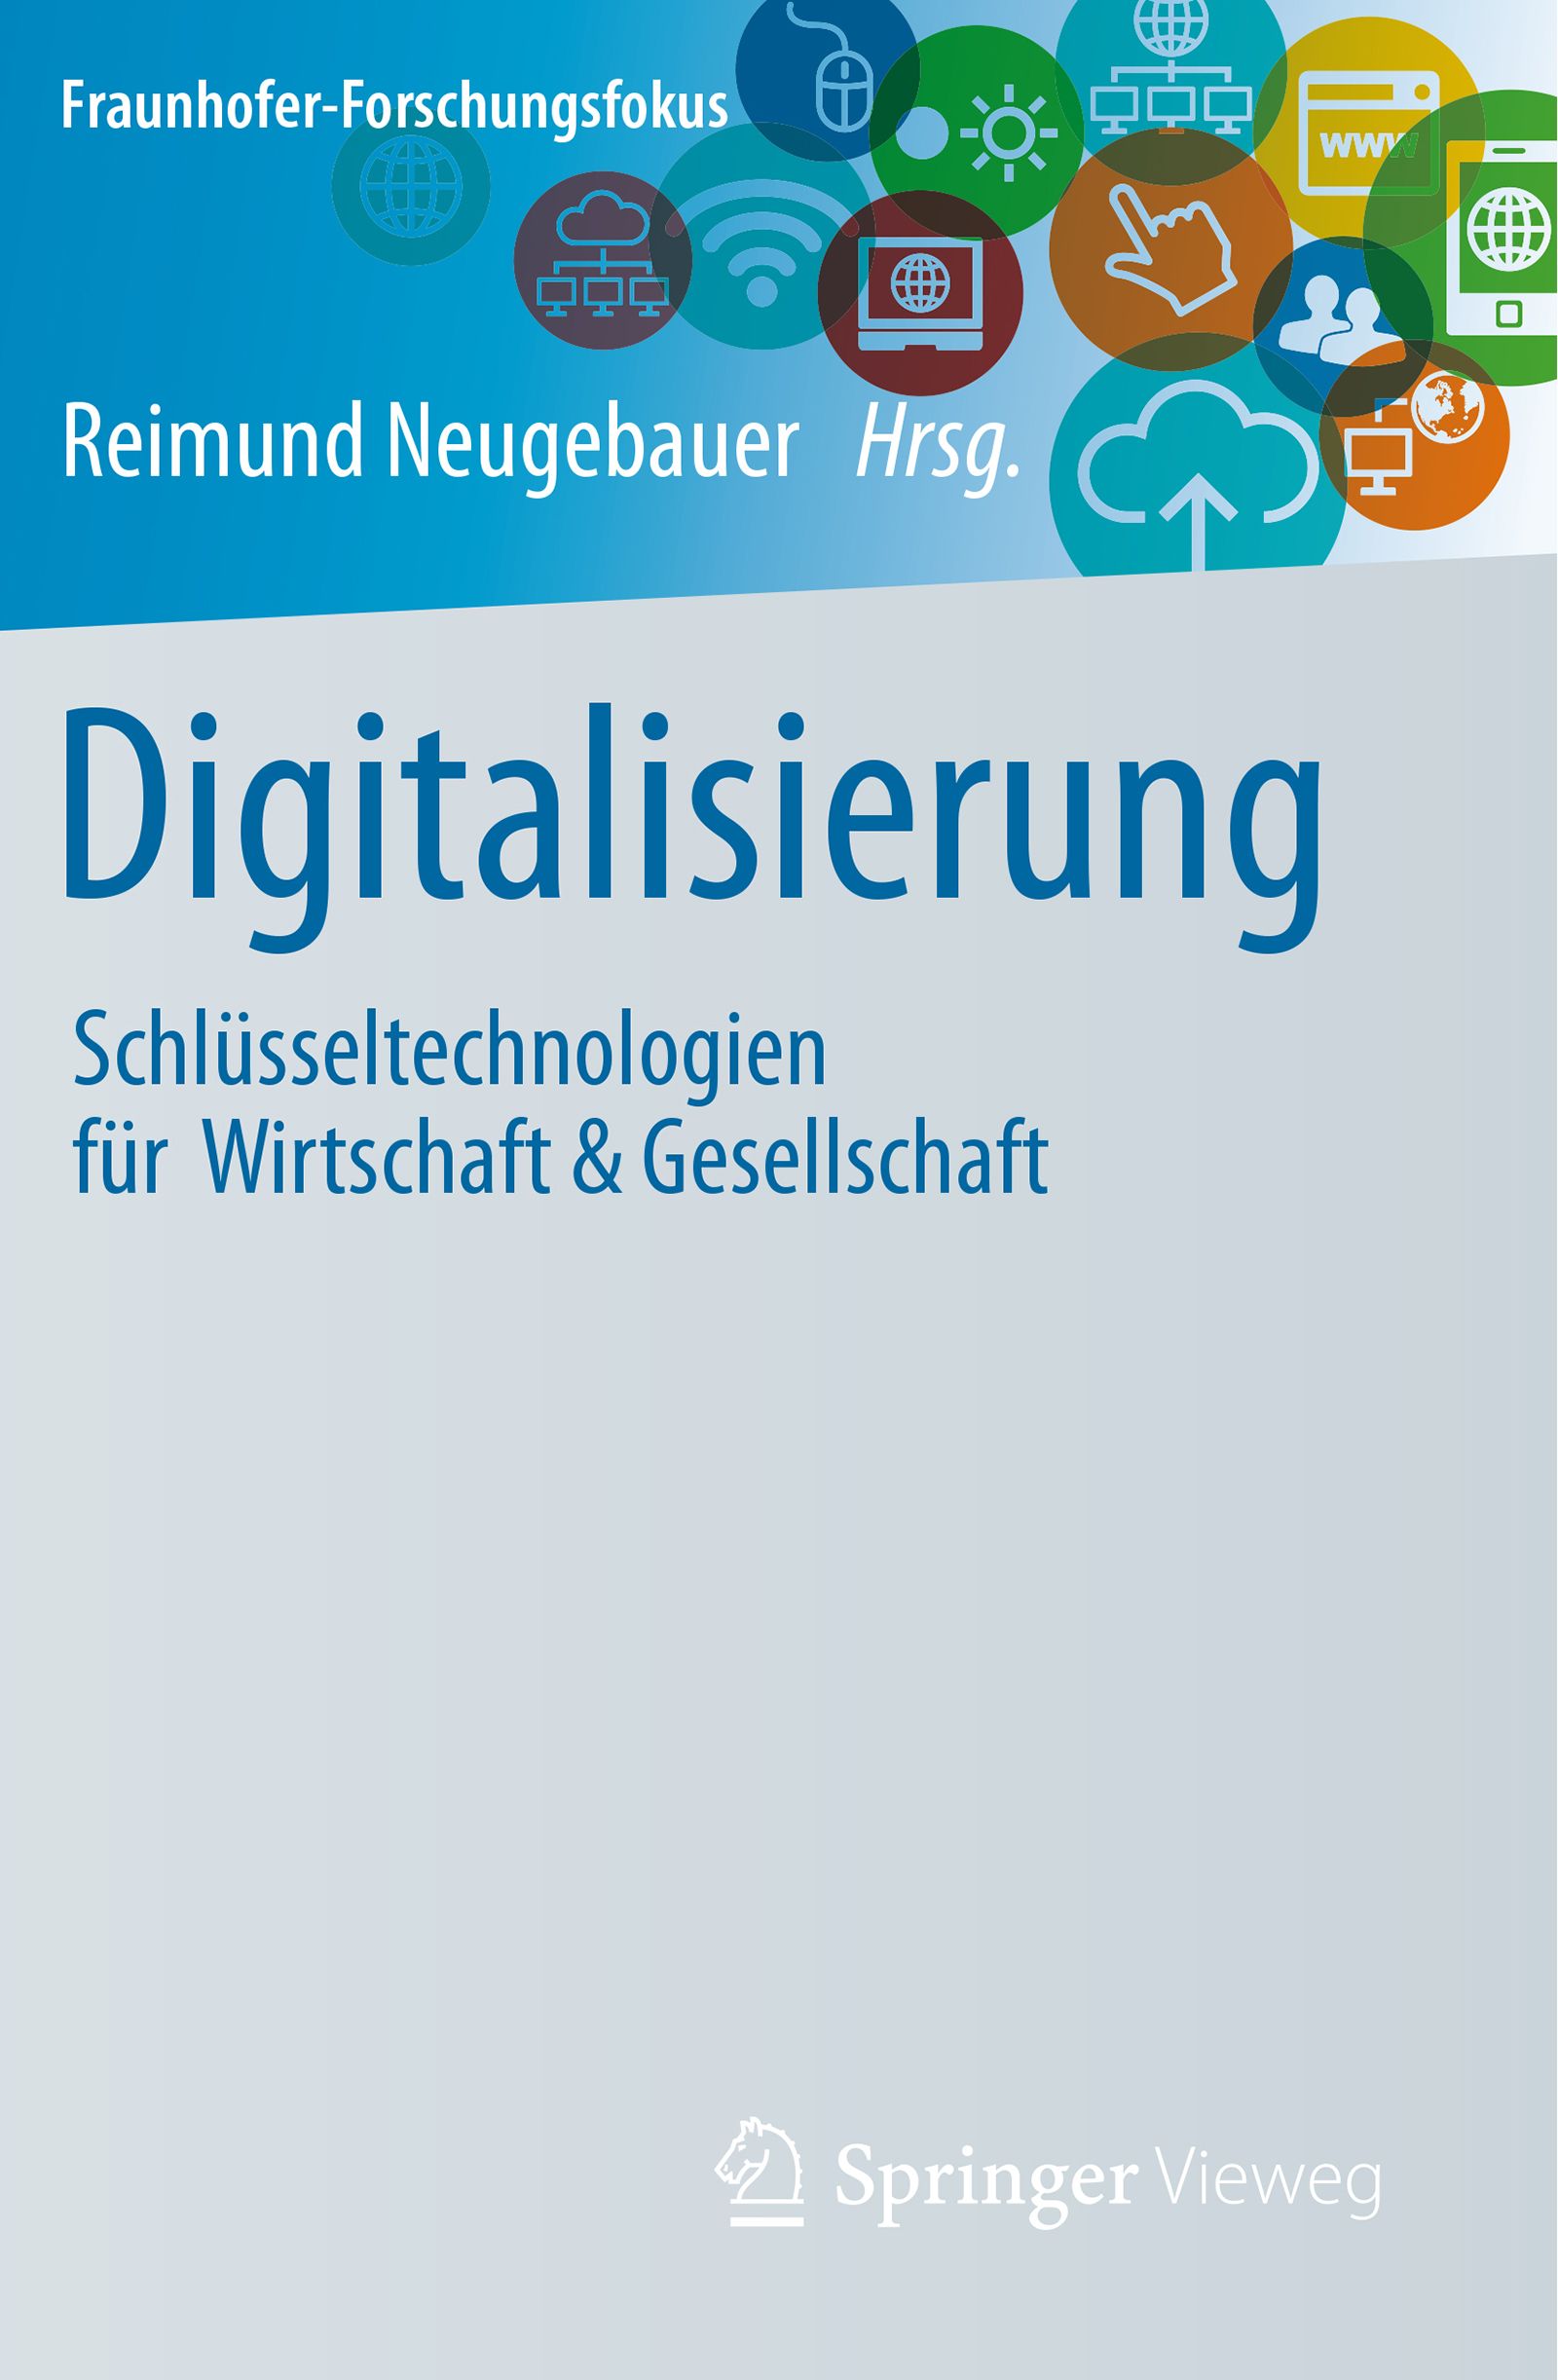 Das Buch »Digitalisierung« ist der zweite Band der Serie »Fraunhofer Forschungsfokus – Schlüsseltechnologien für Wirtschaft &amp; Gesellschaft«.